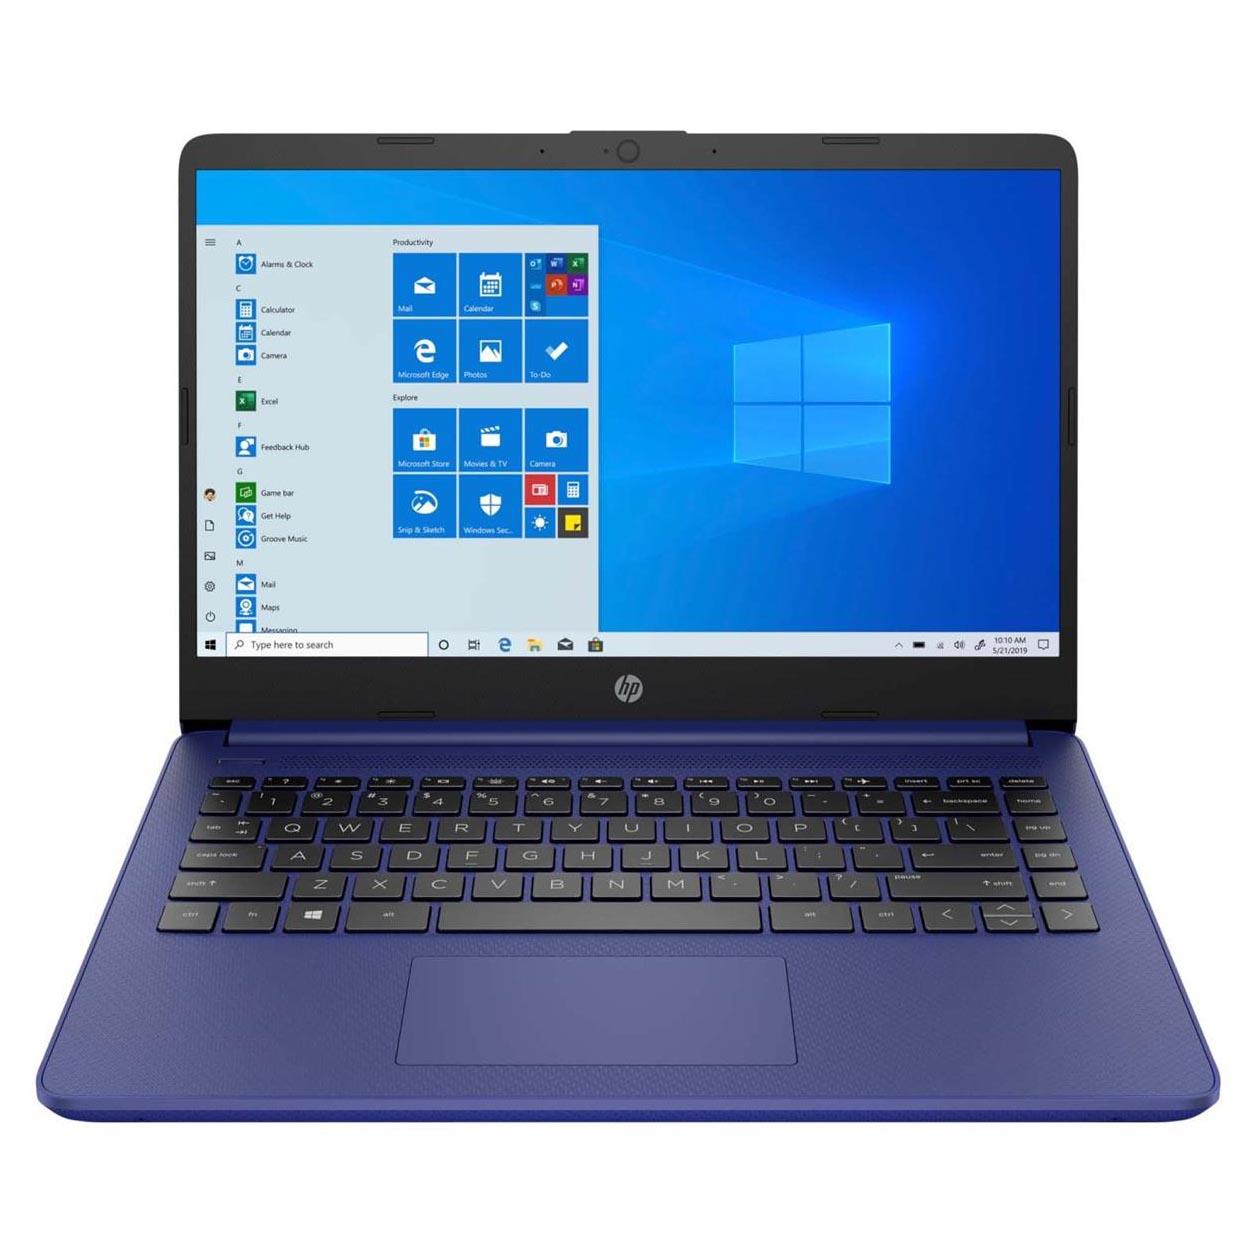 Ноутбук HP 14-dq0050nr, 14 HD Сенсорный, 4Гб/64Гб, Celeron N4020, сине-фиолетовый, английская клавиатура ноутбук hp 14 dk1013dx 14 hd 4гб 128гб черный английская клавиатура